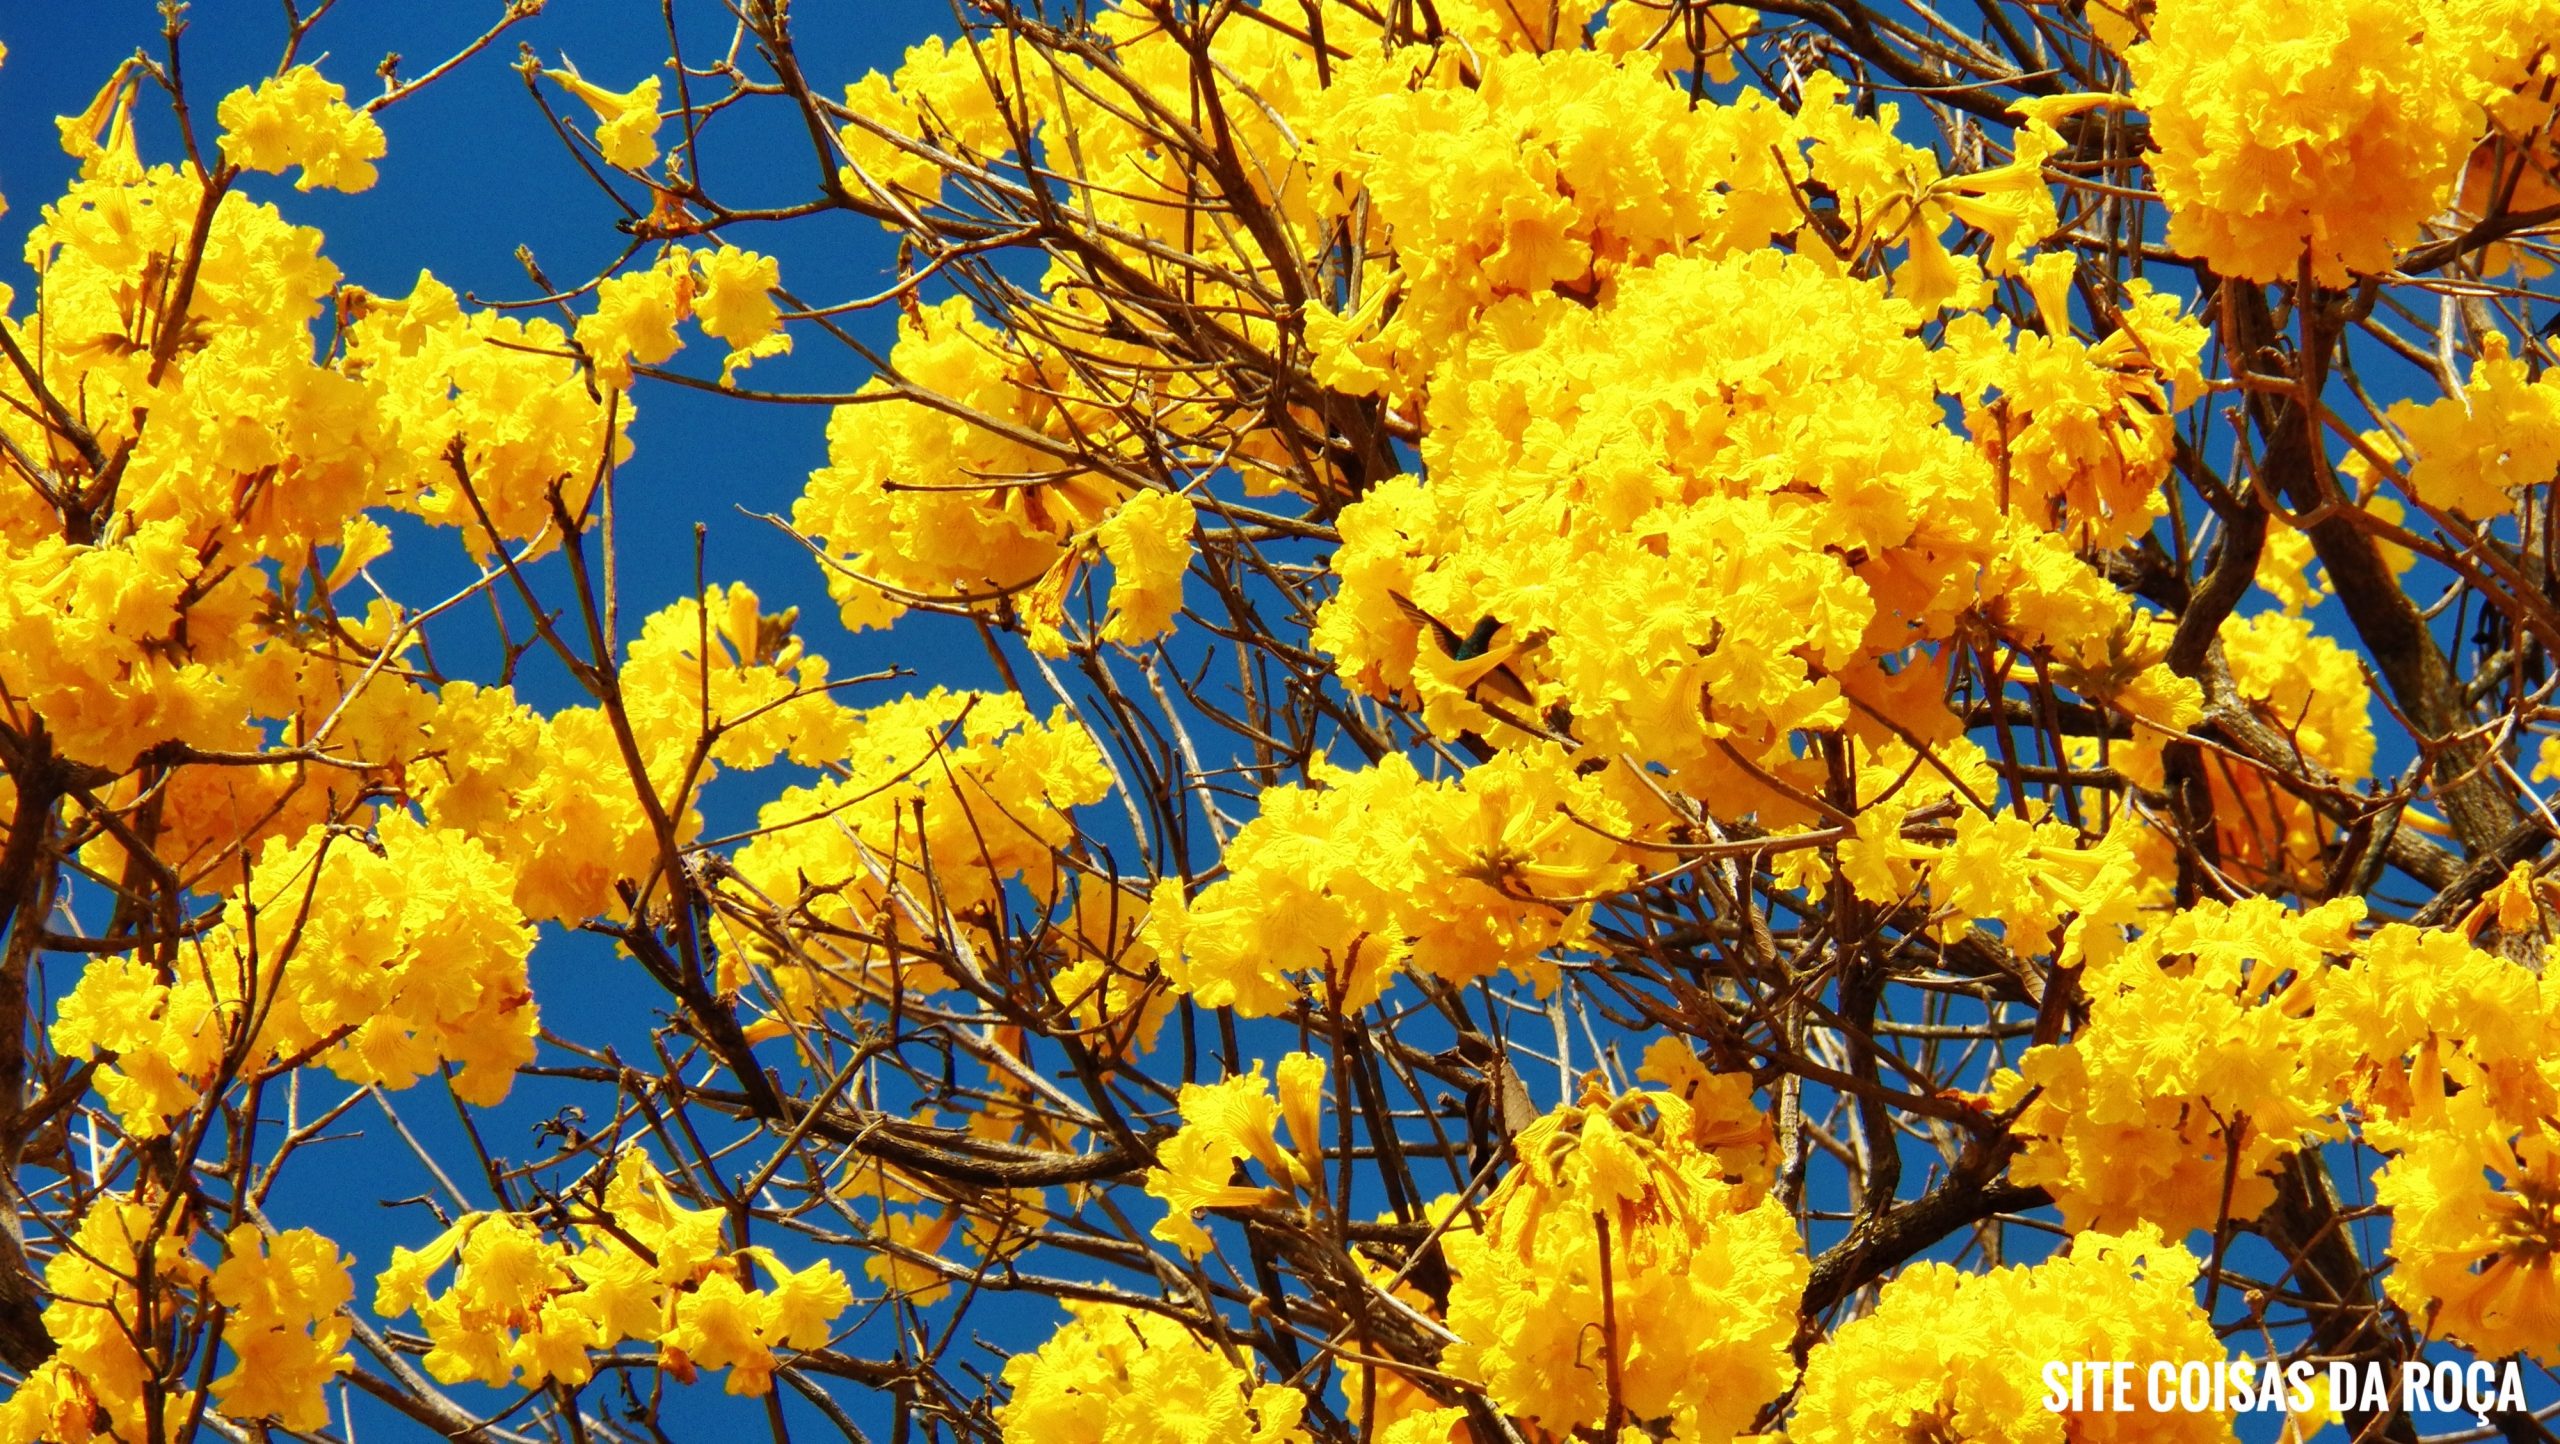 Ipê-amarelo, considerada a árvore símbolo do Brasil